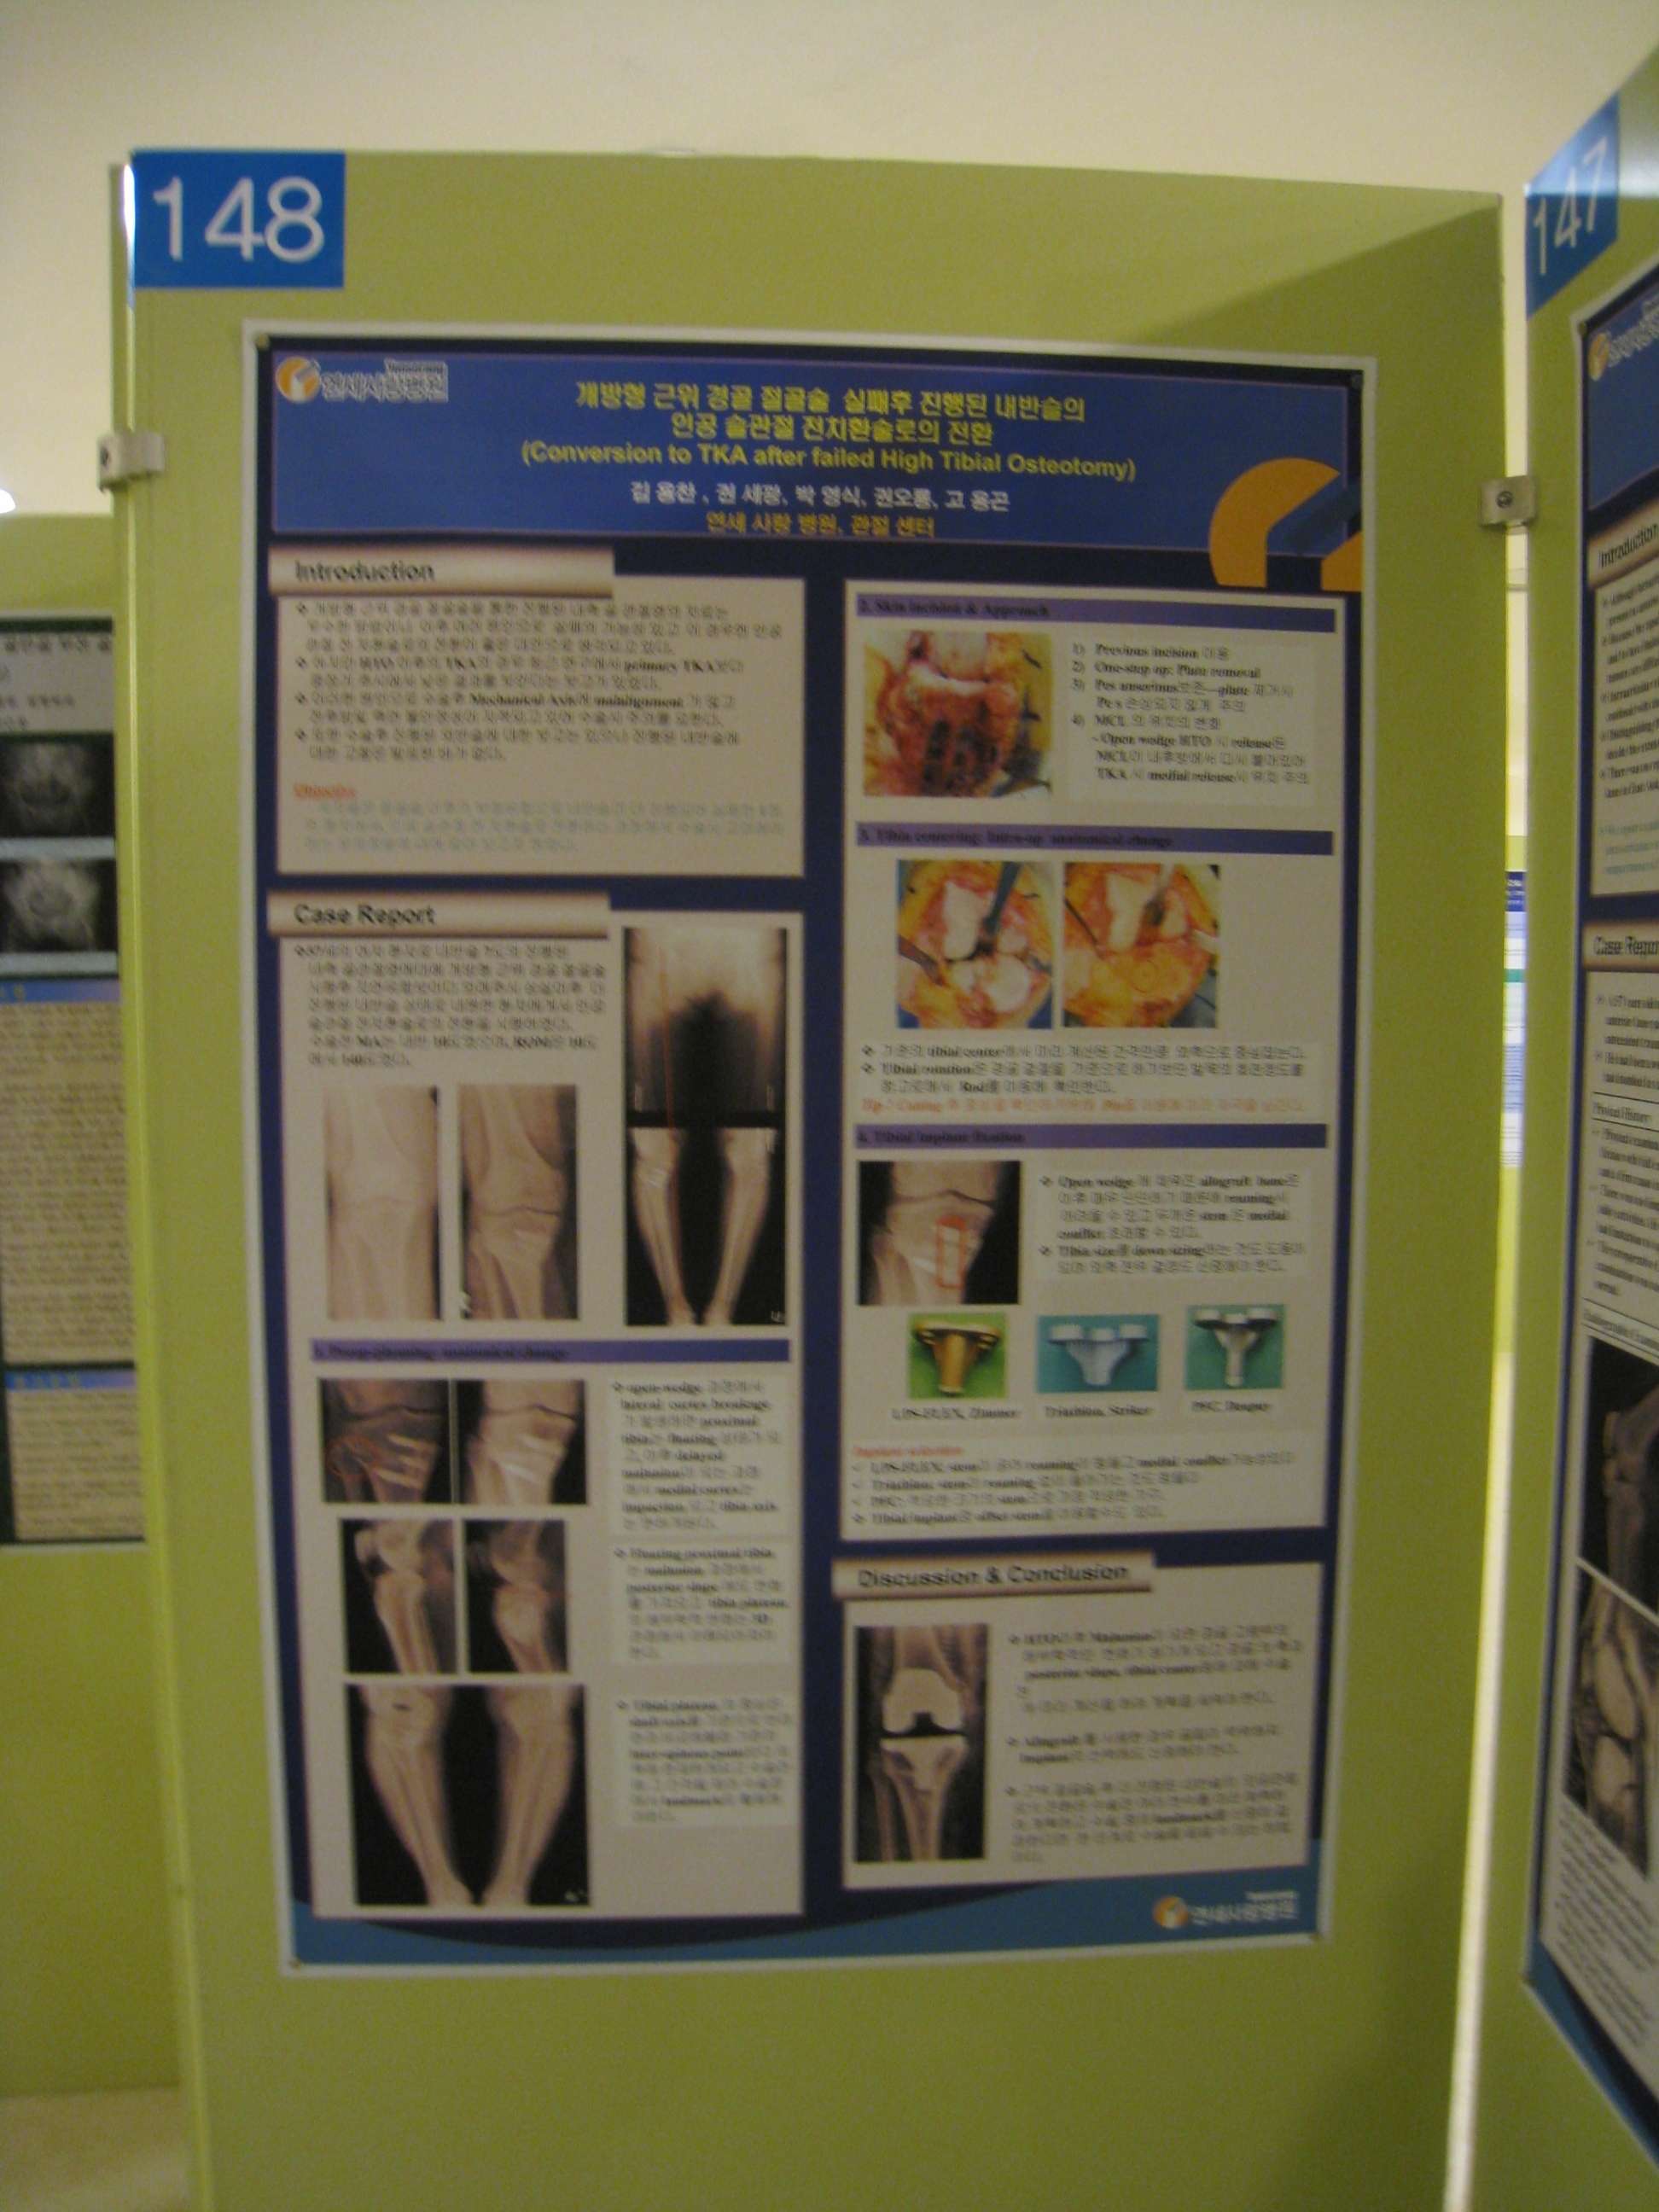 [2009 대한정형외과 학회 포스터] 개방형 근위 경골 절골술 실패 후 인공 슬관절 전치환술로 전환 게시글의 1번째 첨부파일입니다.